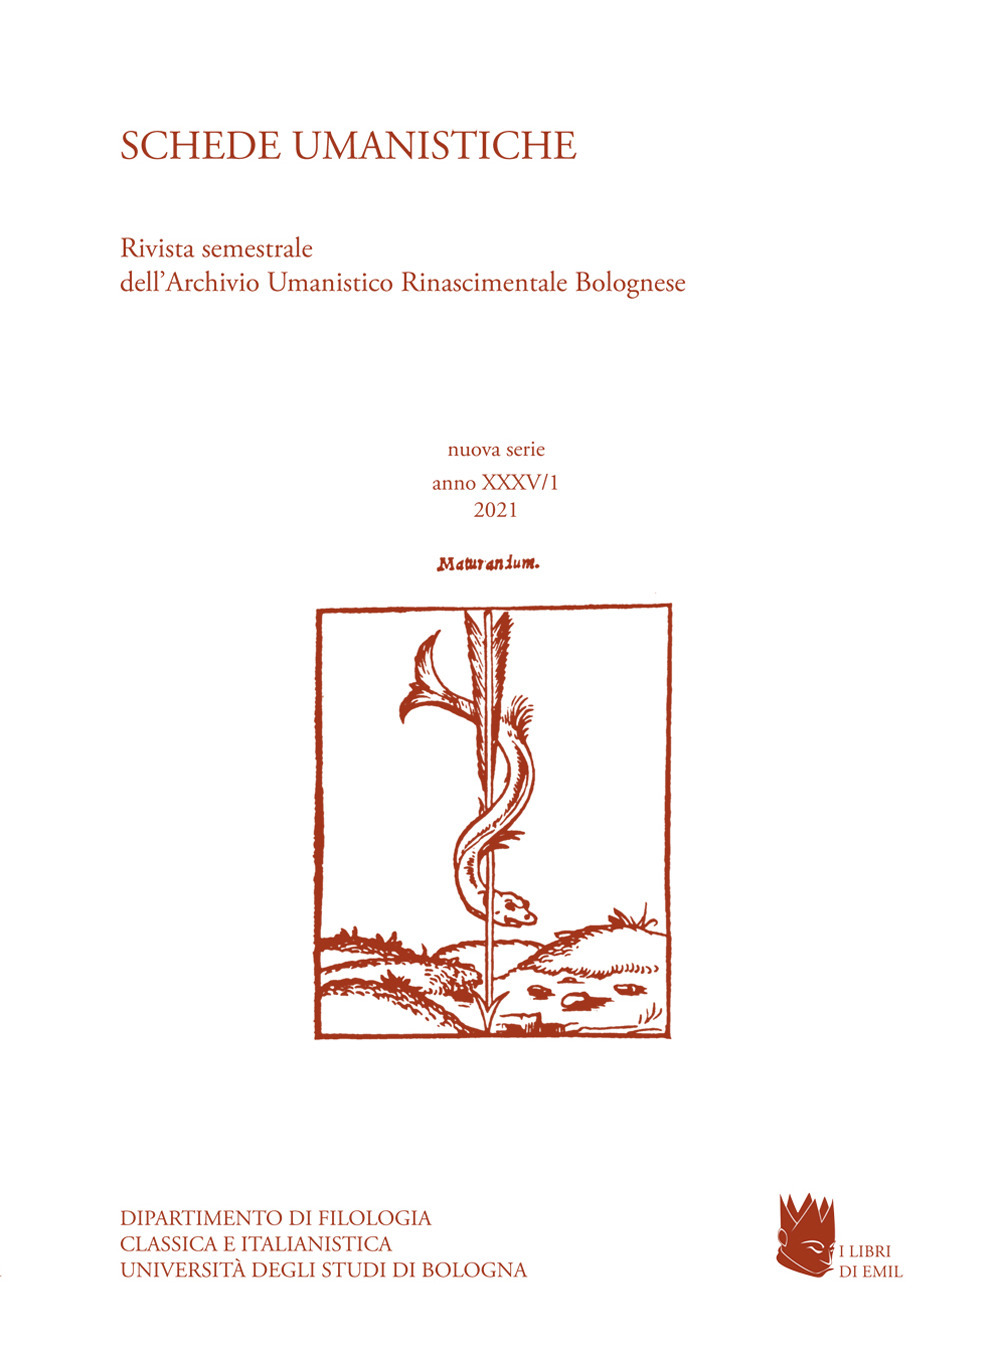 Schede umanistiche. Rivista annuale dell'Archivio Umanistico Rinascimentale Bolognese. Vol. 35/1: In memoria di Andrea Battistini